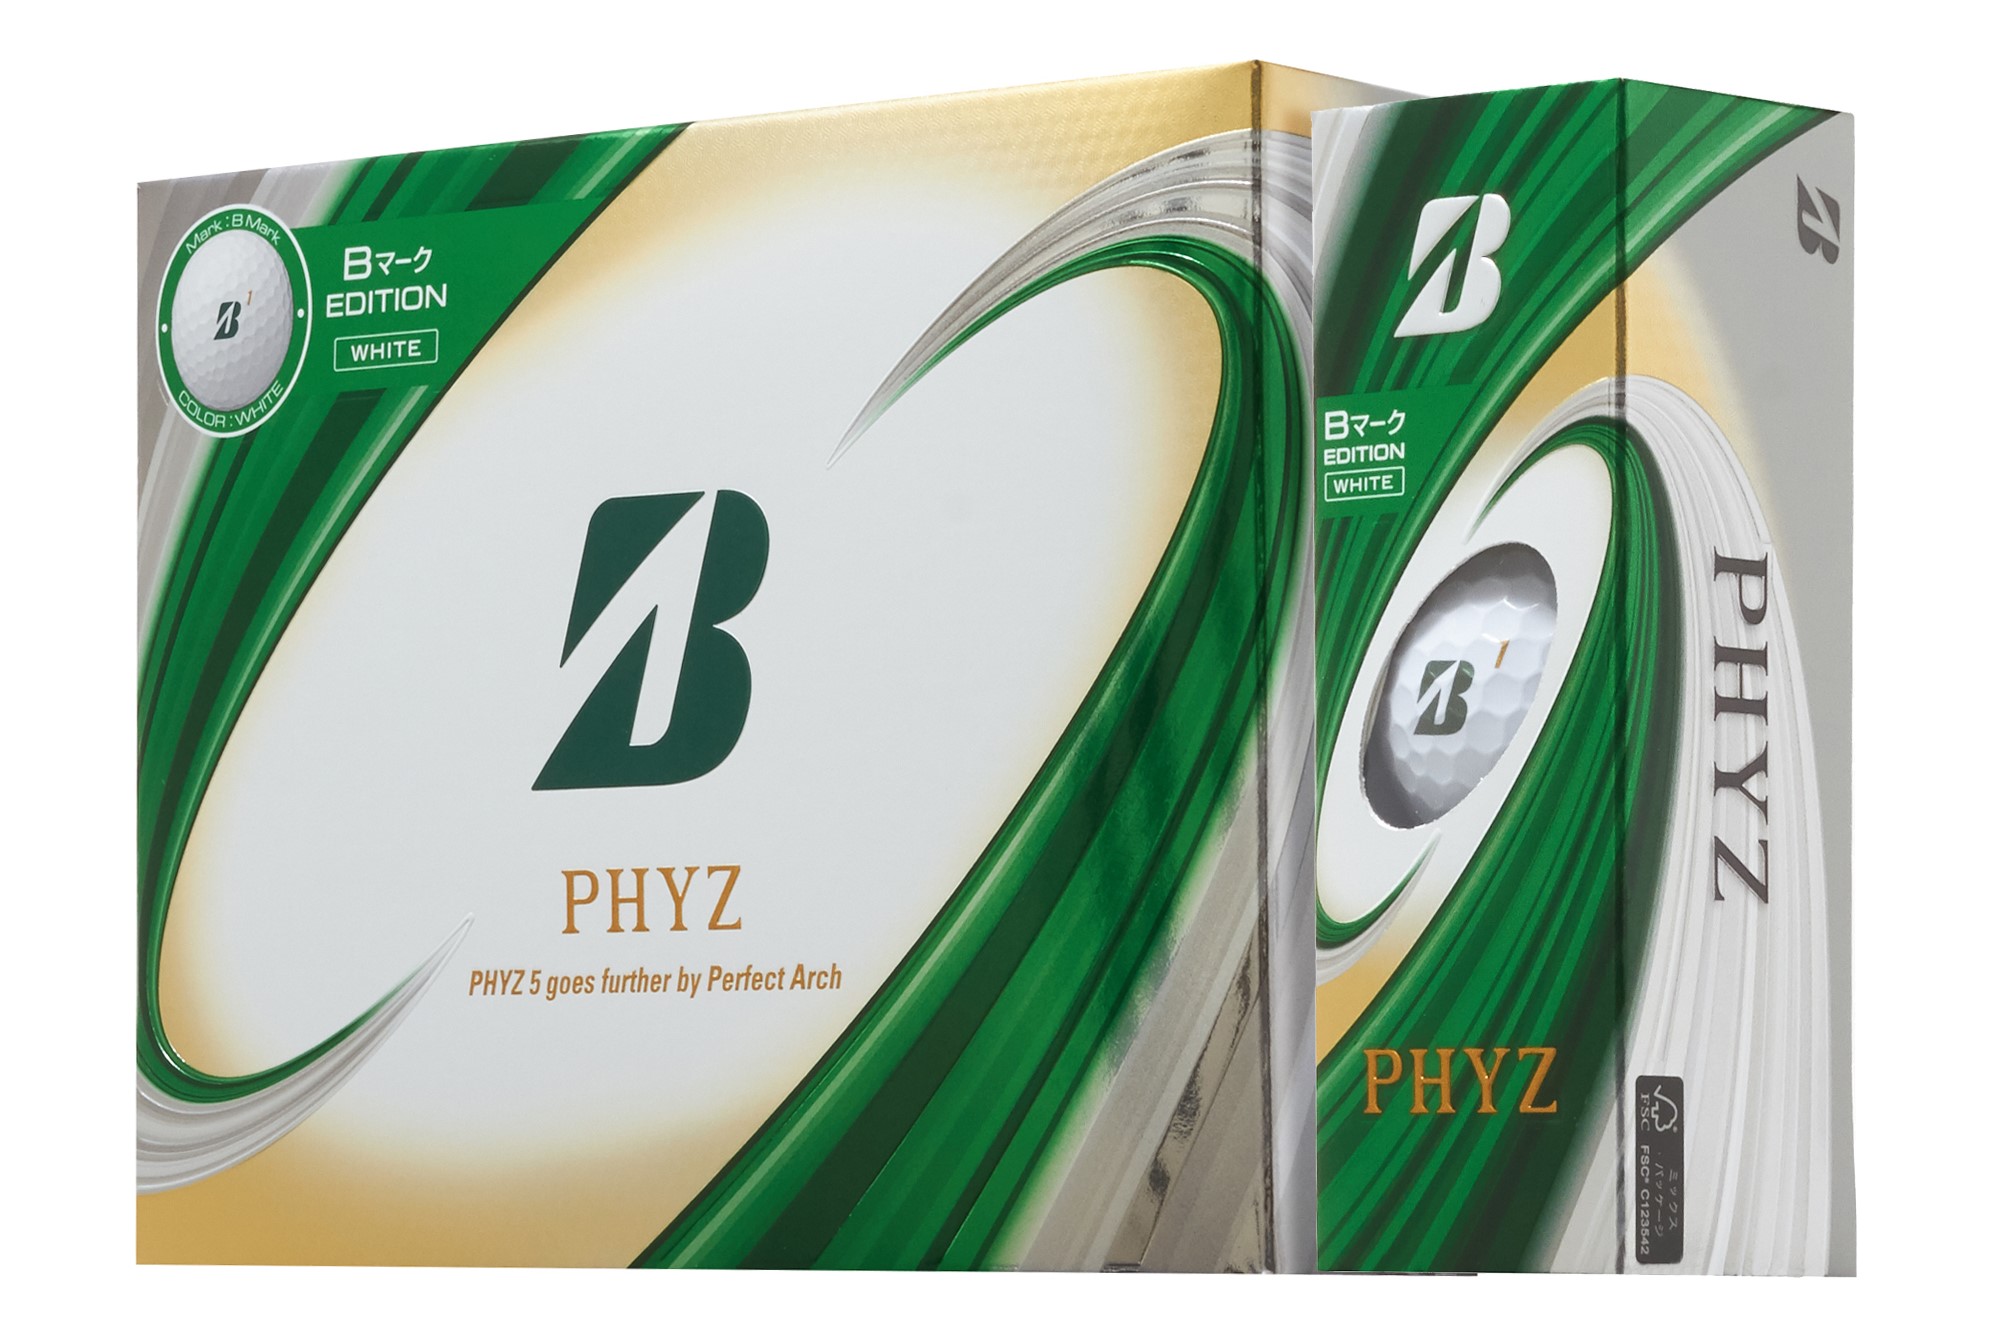 ブリヂストンスポーツ Phyz Bマーク Edition を発売 ゴム報知新聞ｎｅｘｔ ゴム業界の専門紙